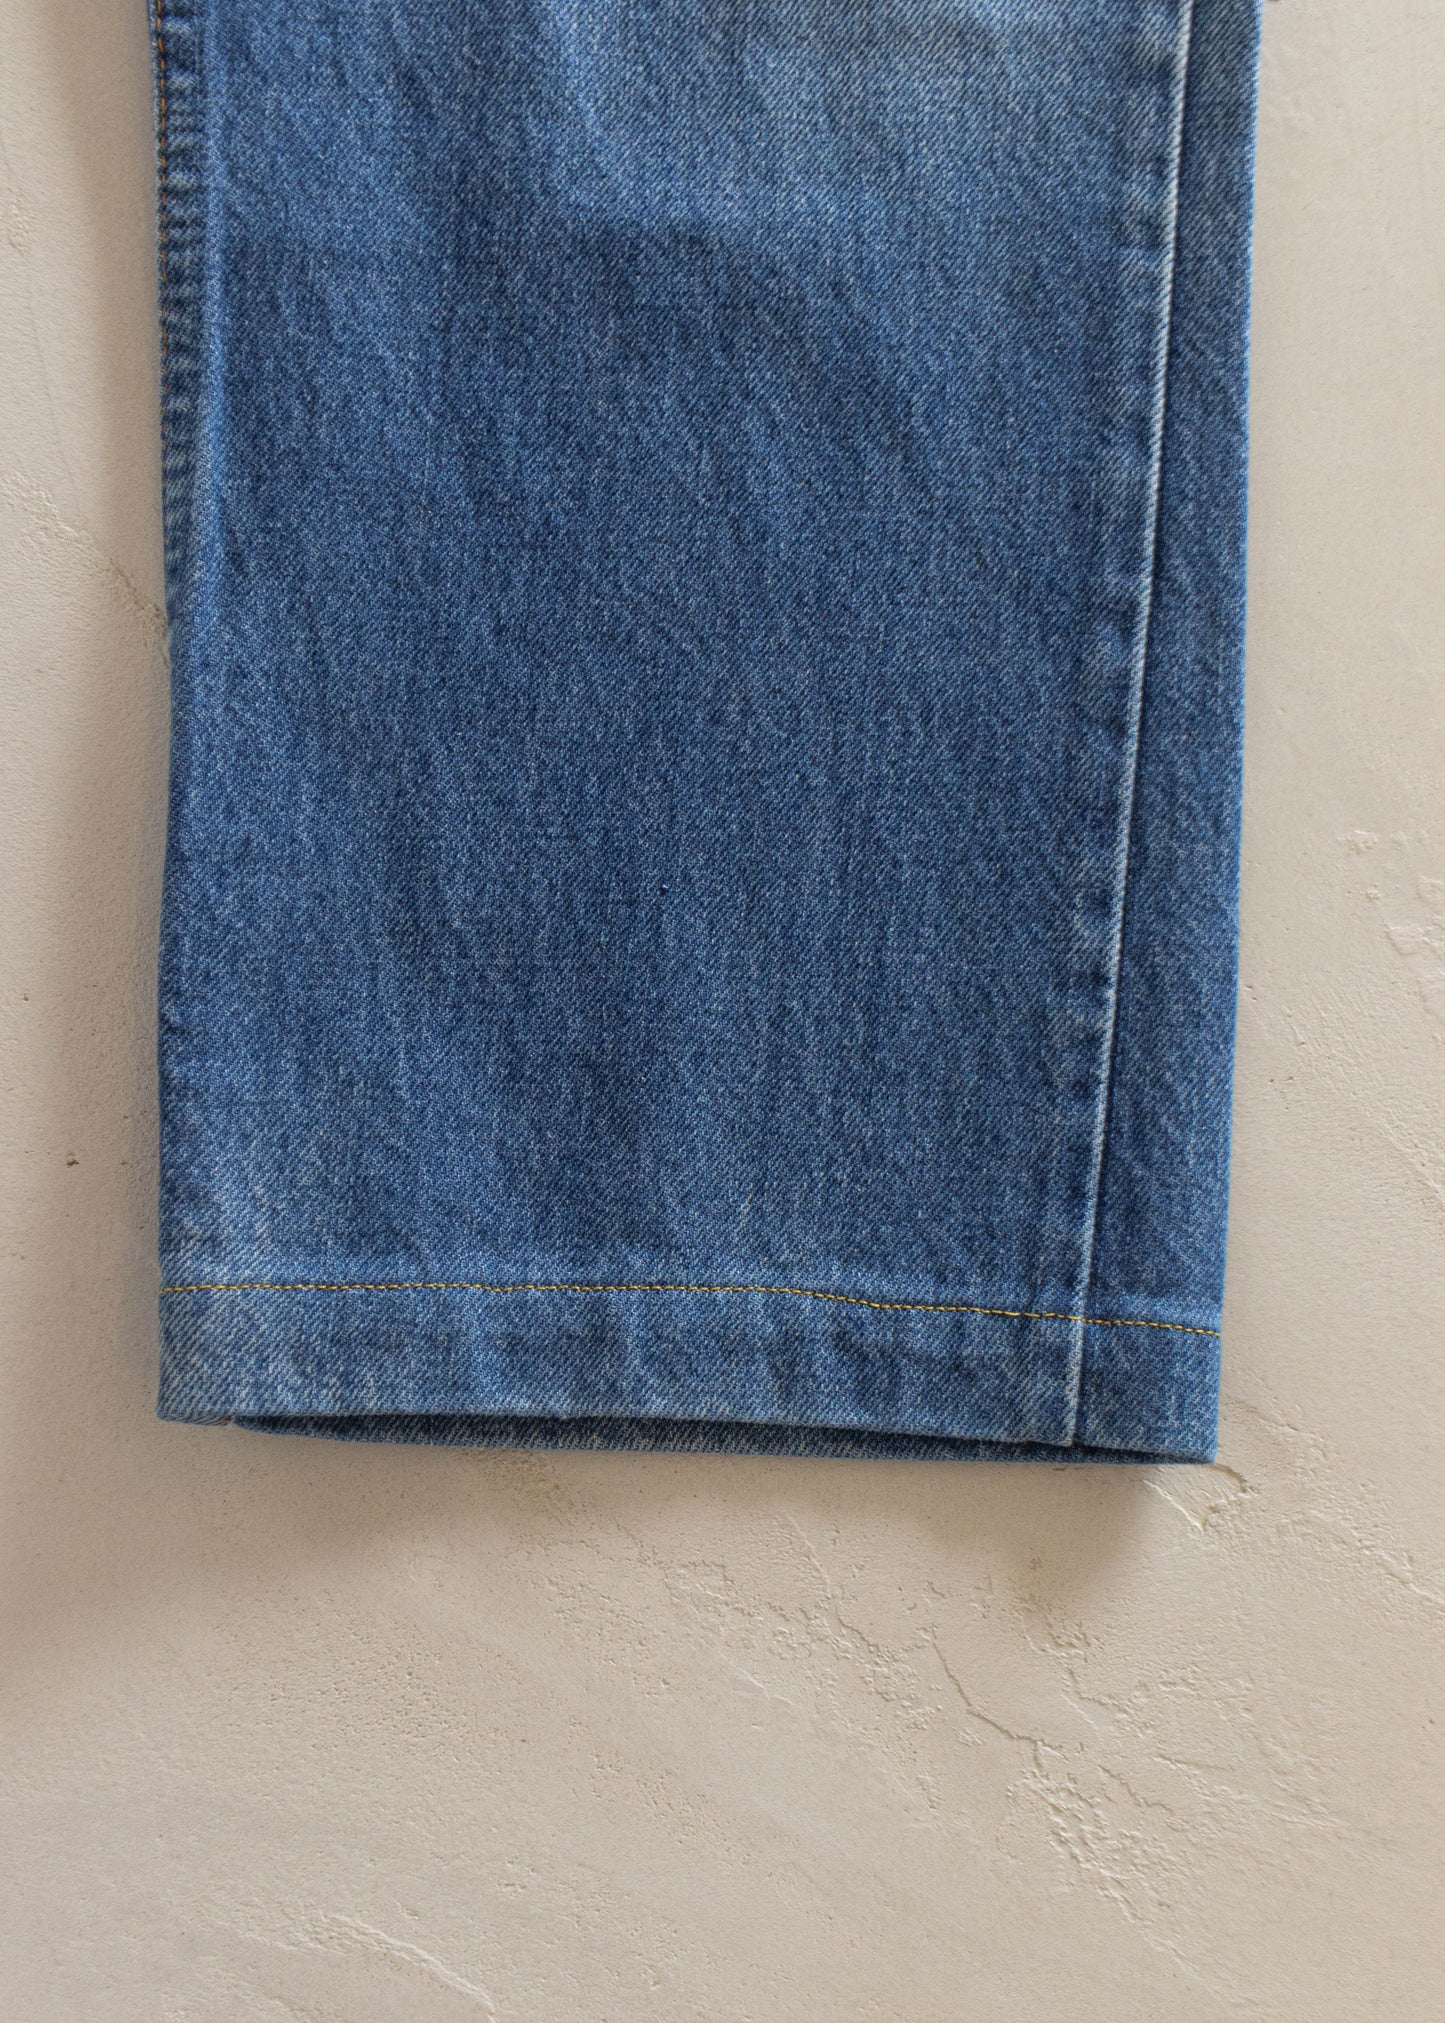 Vintage 1980s Levi's 619 Orange Tab Midwash Jeans Size Women's 31 Men's 33